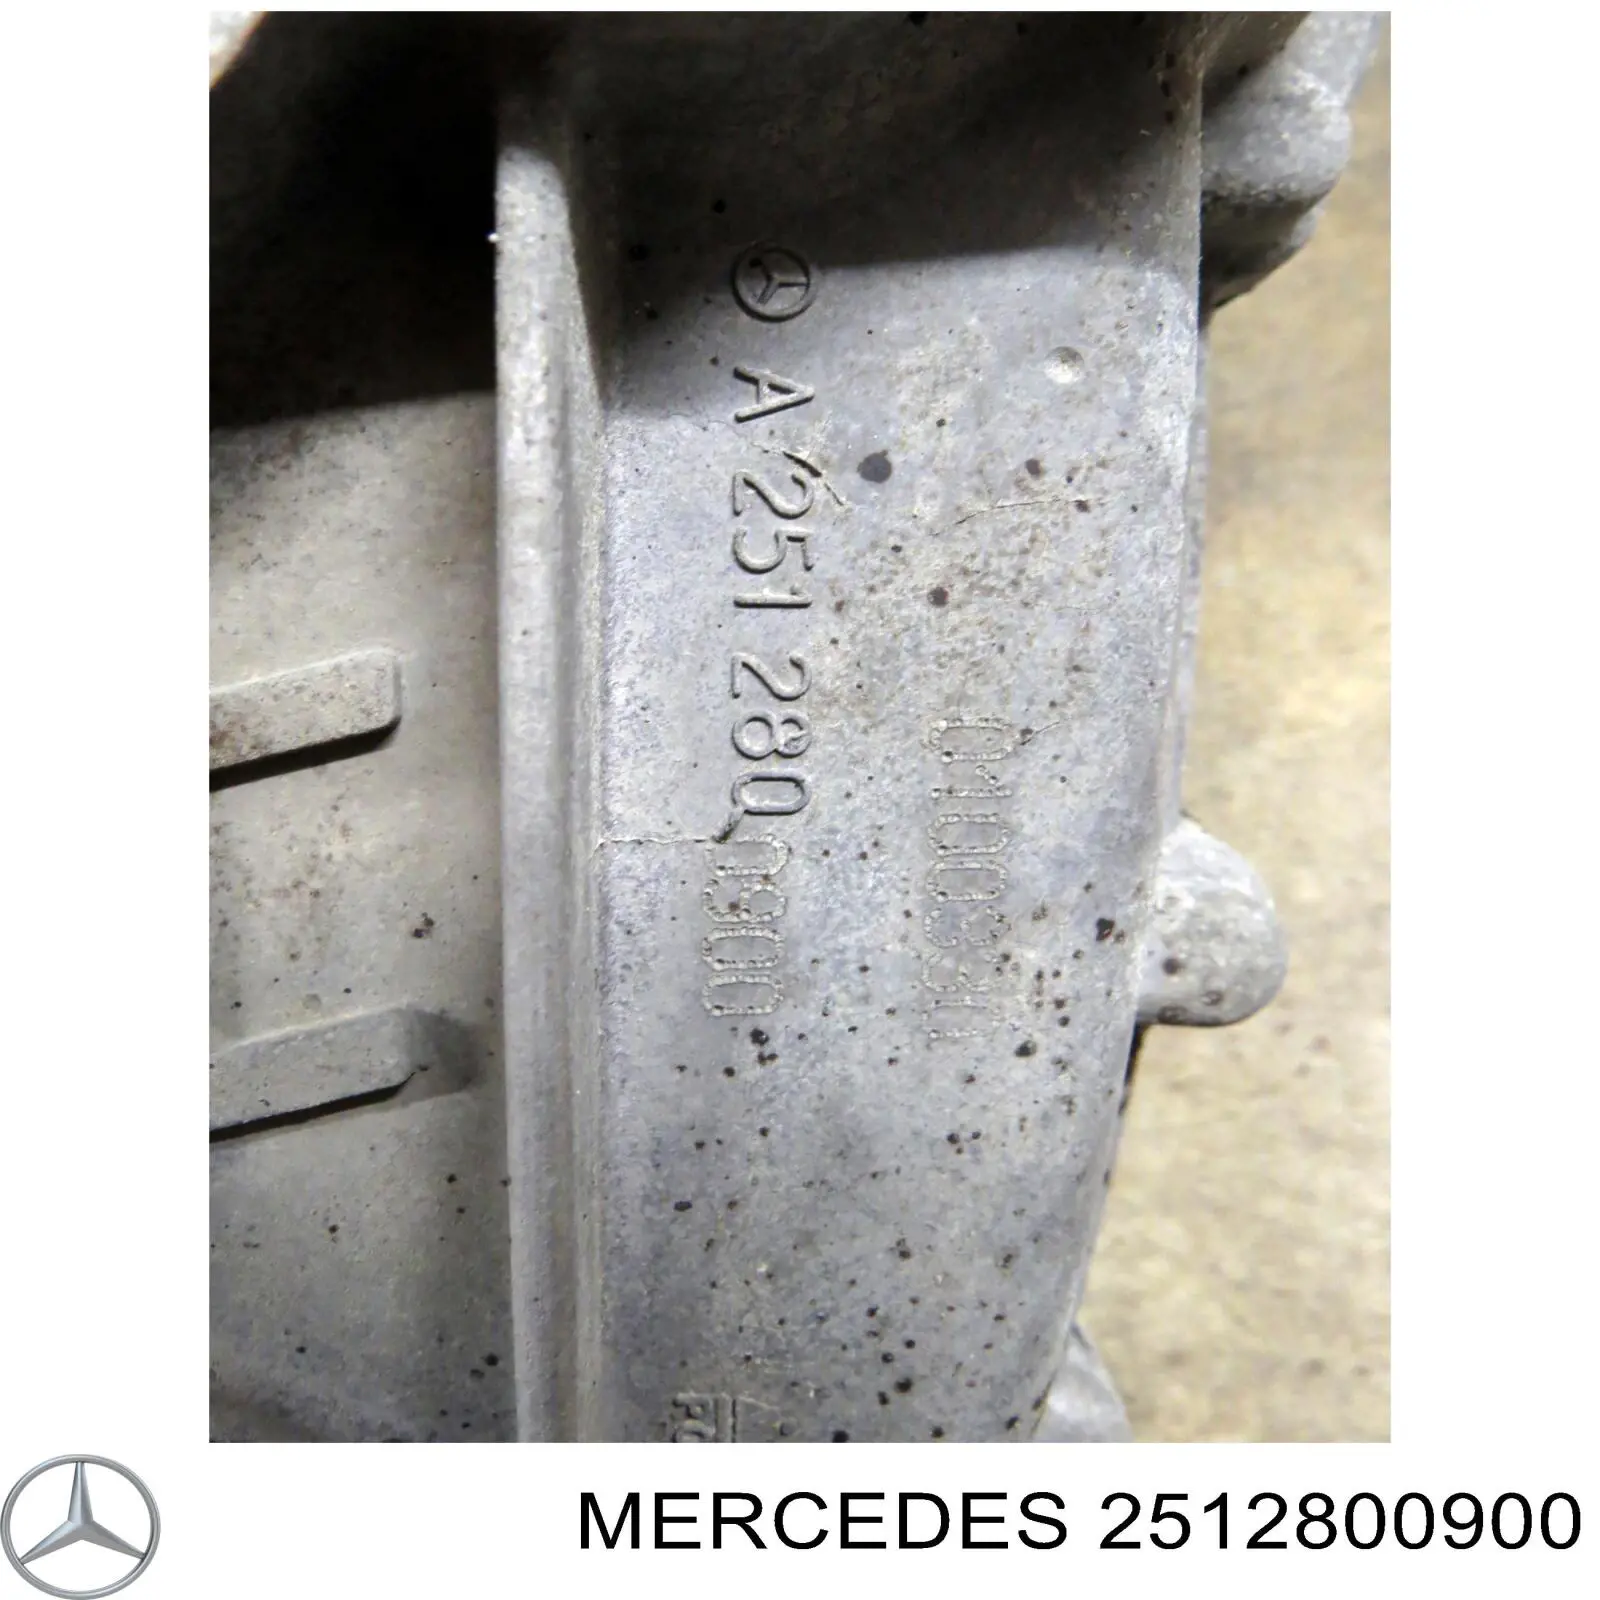 2512800900 Mercedes раздатка, коробка роздавальна